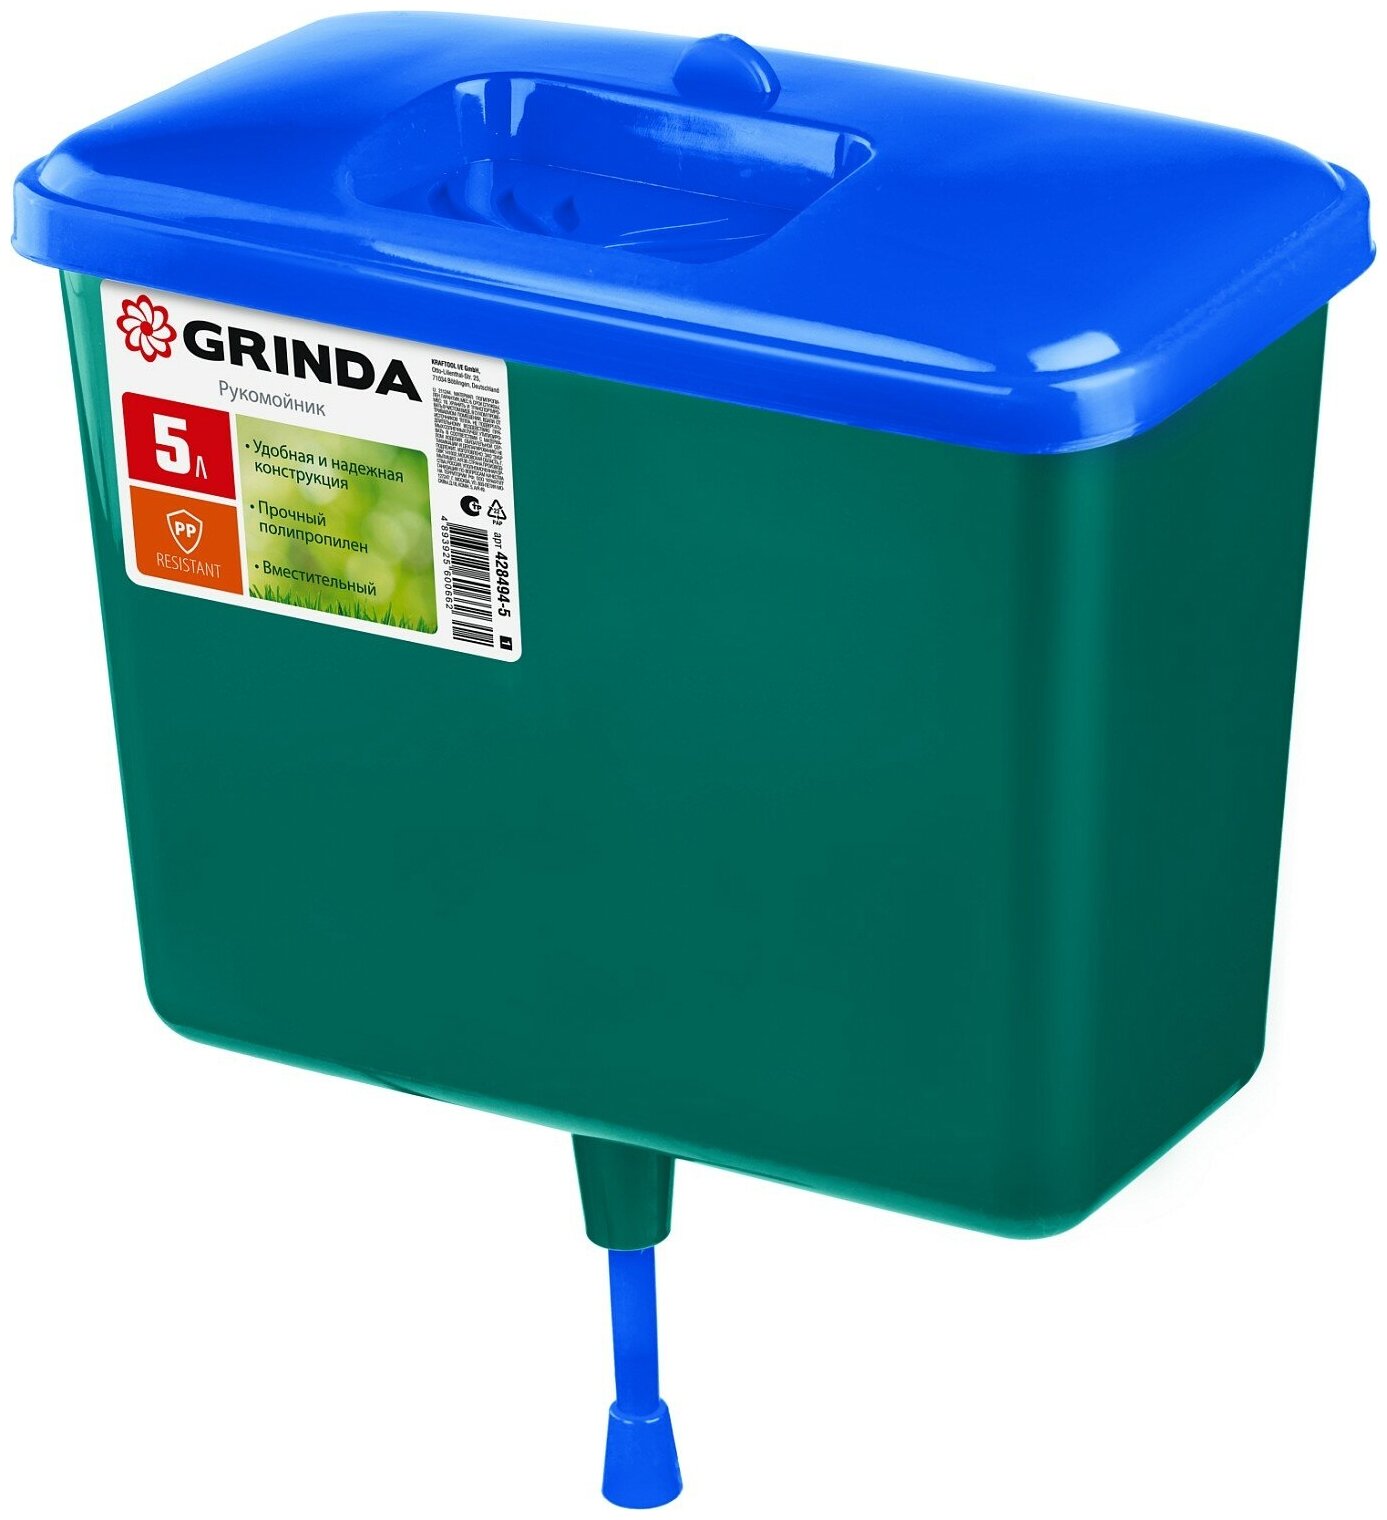 GRINDA 5 л пластиковый Рукомойник (428494-5)